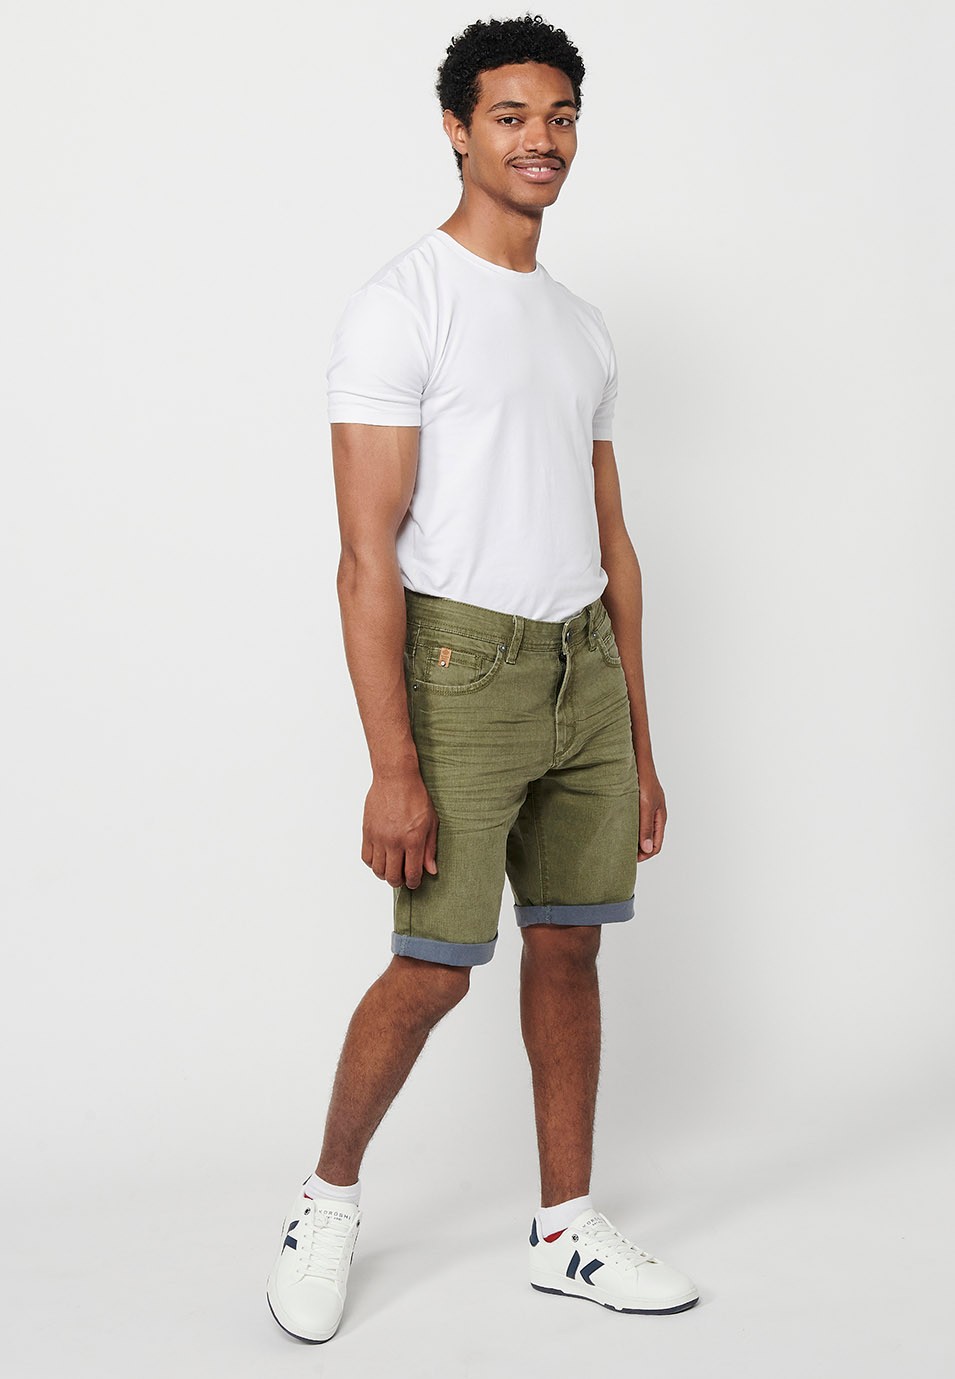 Jeans-Bermudashorts mit Umschlag, Frontverschluss mit Reißverschluss und Knopf, fünf Taschen und einer Tasche, Farbe Oliv für Herren